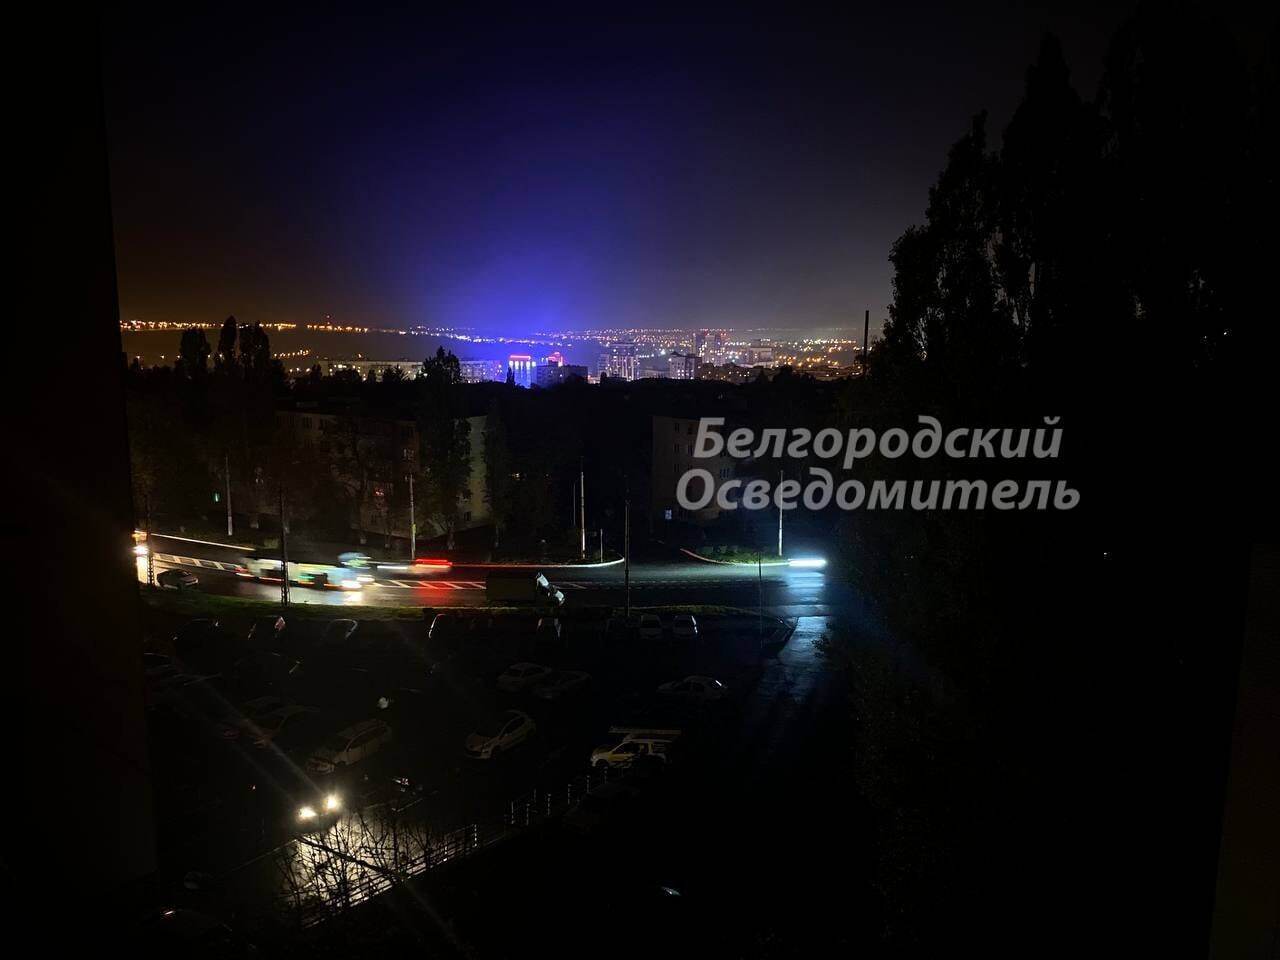 У російському Бєлгороді вдруге за місяць спалахнула пожежа на електропідстанції, частина міста без світла. Відео